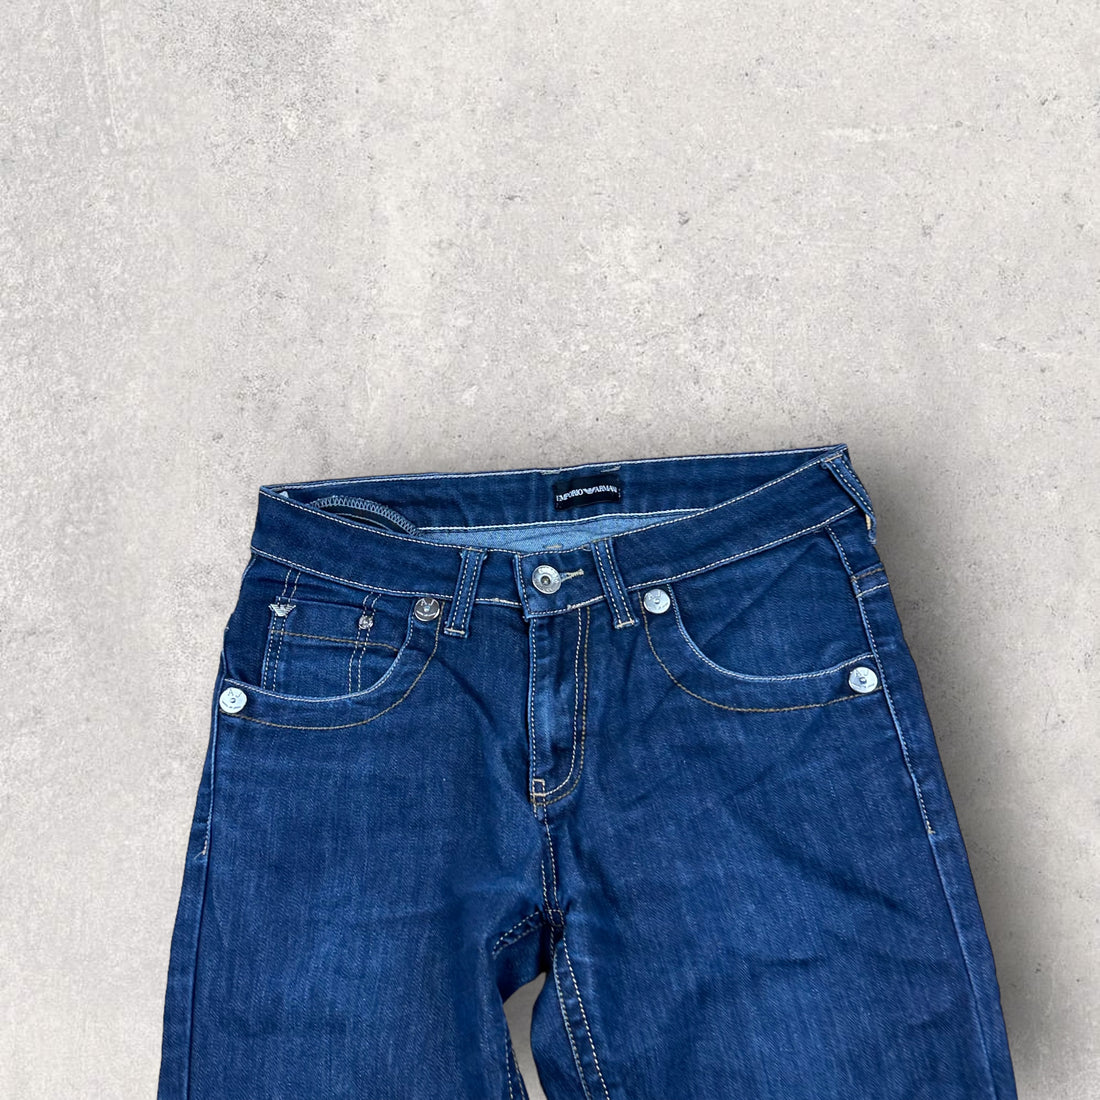 Vintage Armani Jeans (31)